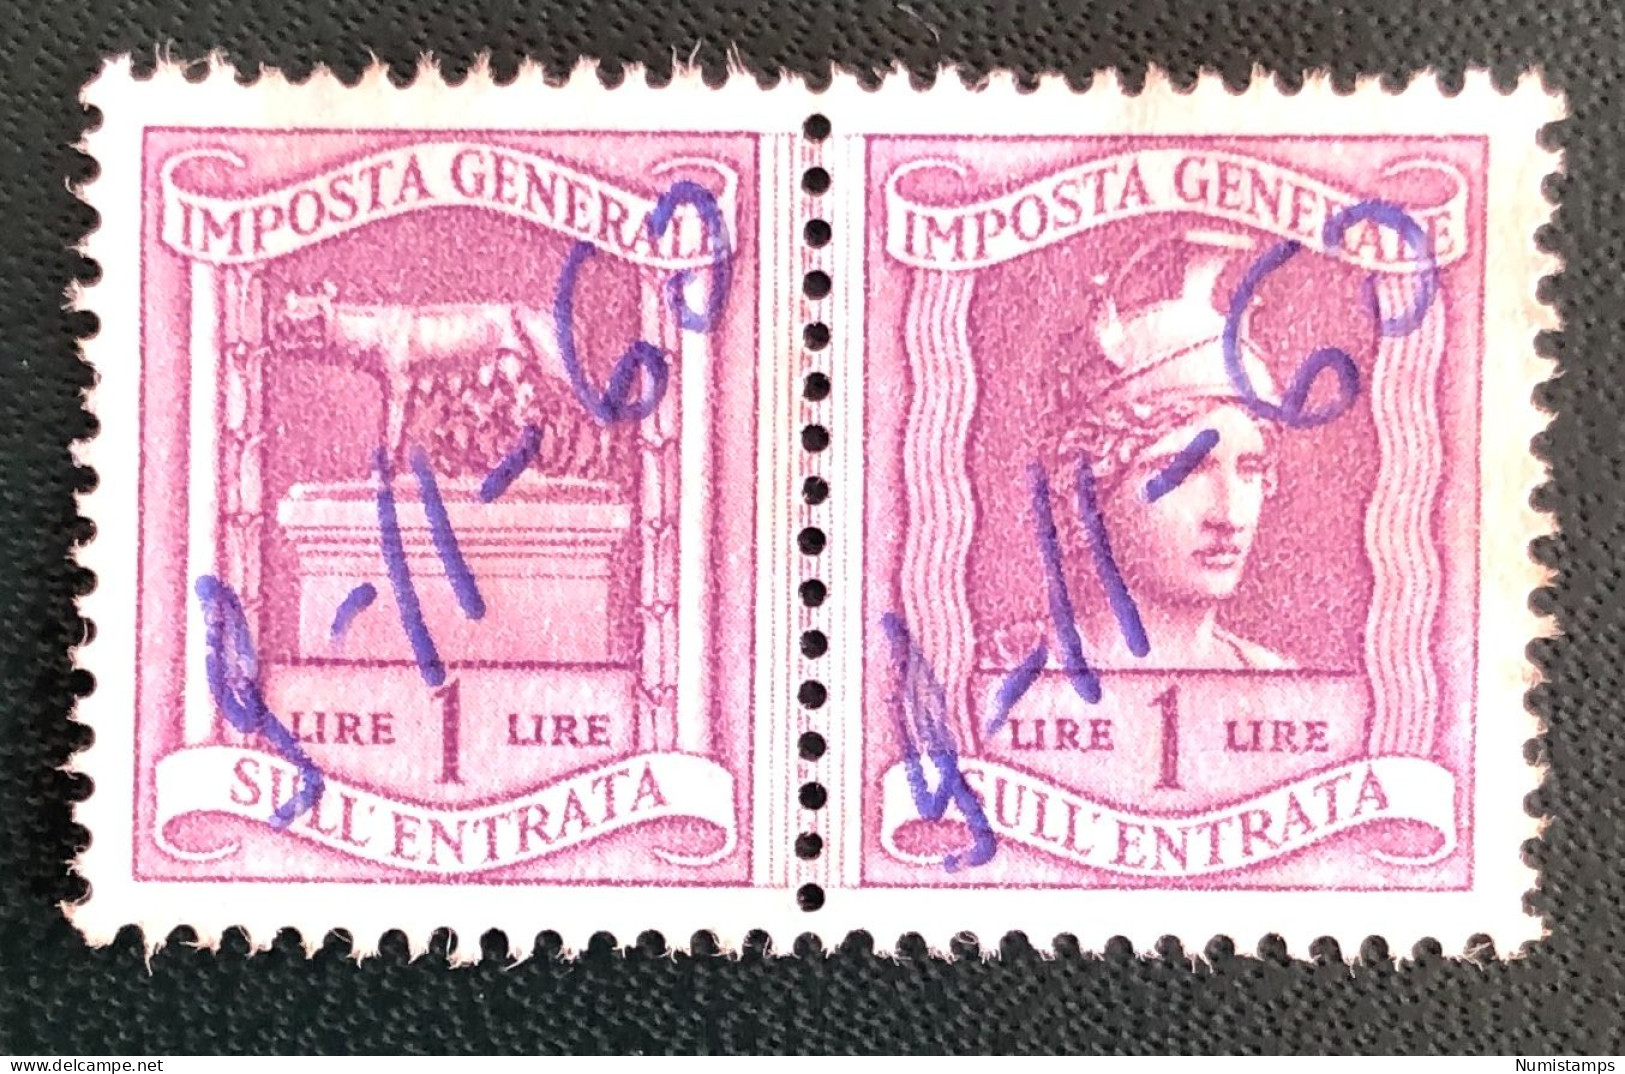 Imposta Generale Sull'entrata - Lire 1 - Revenue Stamps